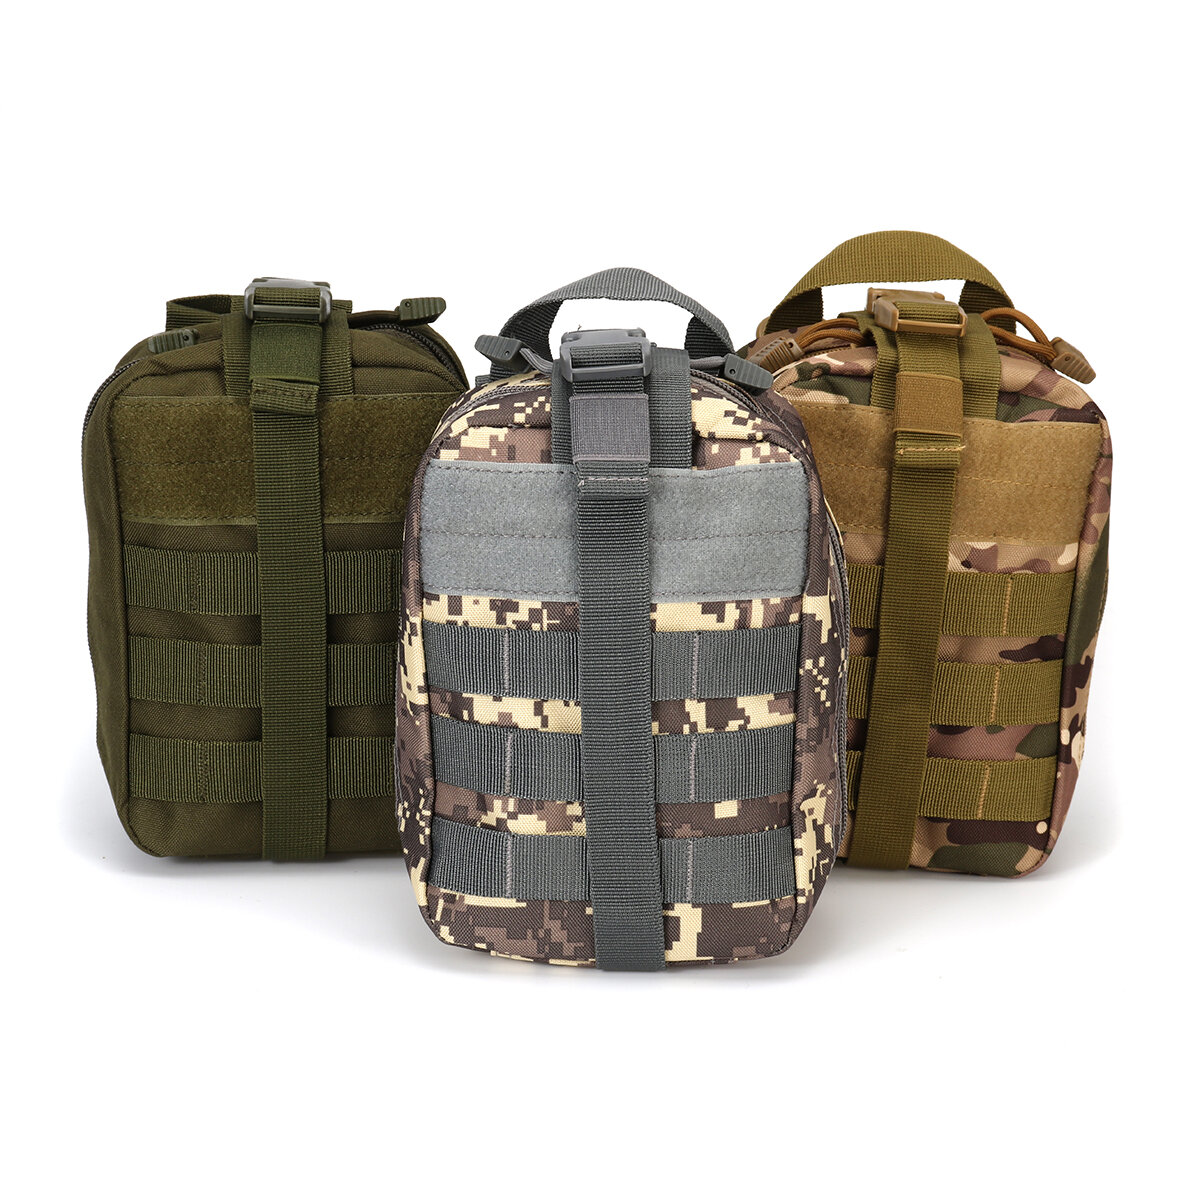 Bolsa de cintura tática de 2,7 litros, bolsa de cinto militar, bolsa de armazenamento suspensa para atividades ao ar livre, camping e caça.